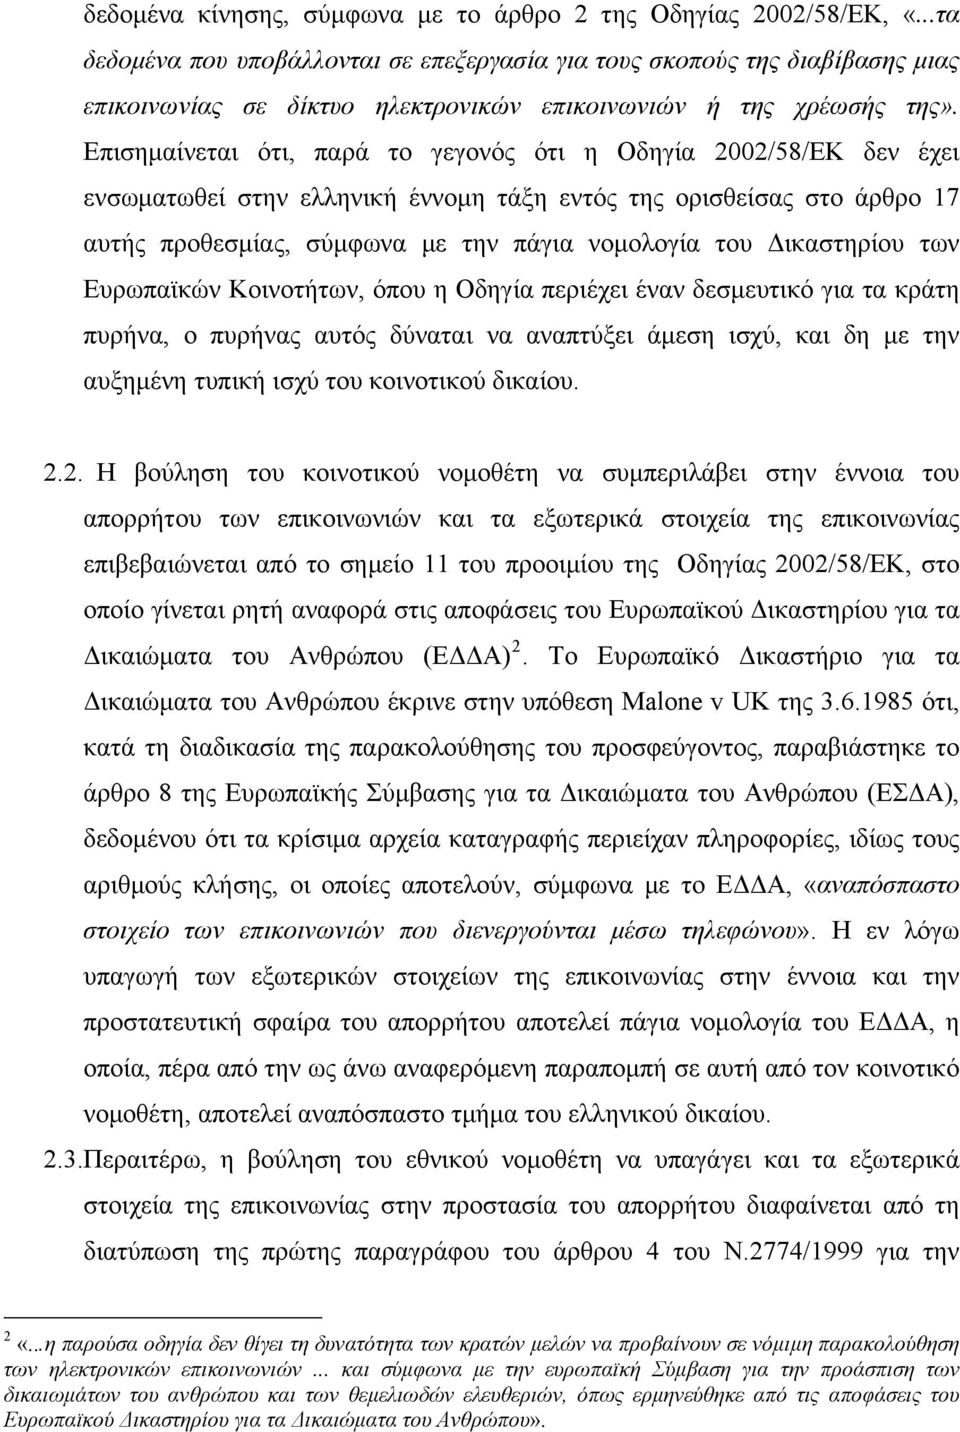 Επισημαίνεται ότι, παρά το γεγονός ότι η Οδηγία 2002/58/ΕΚ δεν έχει ενσωματωθεί στην ελληνική έννομη τάξη εντός της ορισθείσας στο άρθρο 17 αυτής προθεσμίας, σύμφωνα με την πάγια νομολογία του